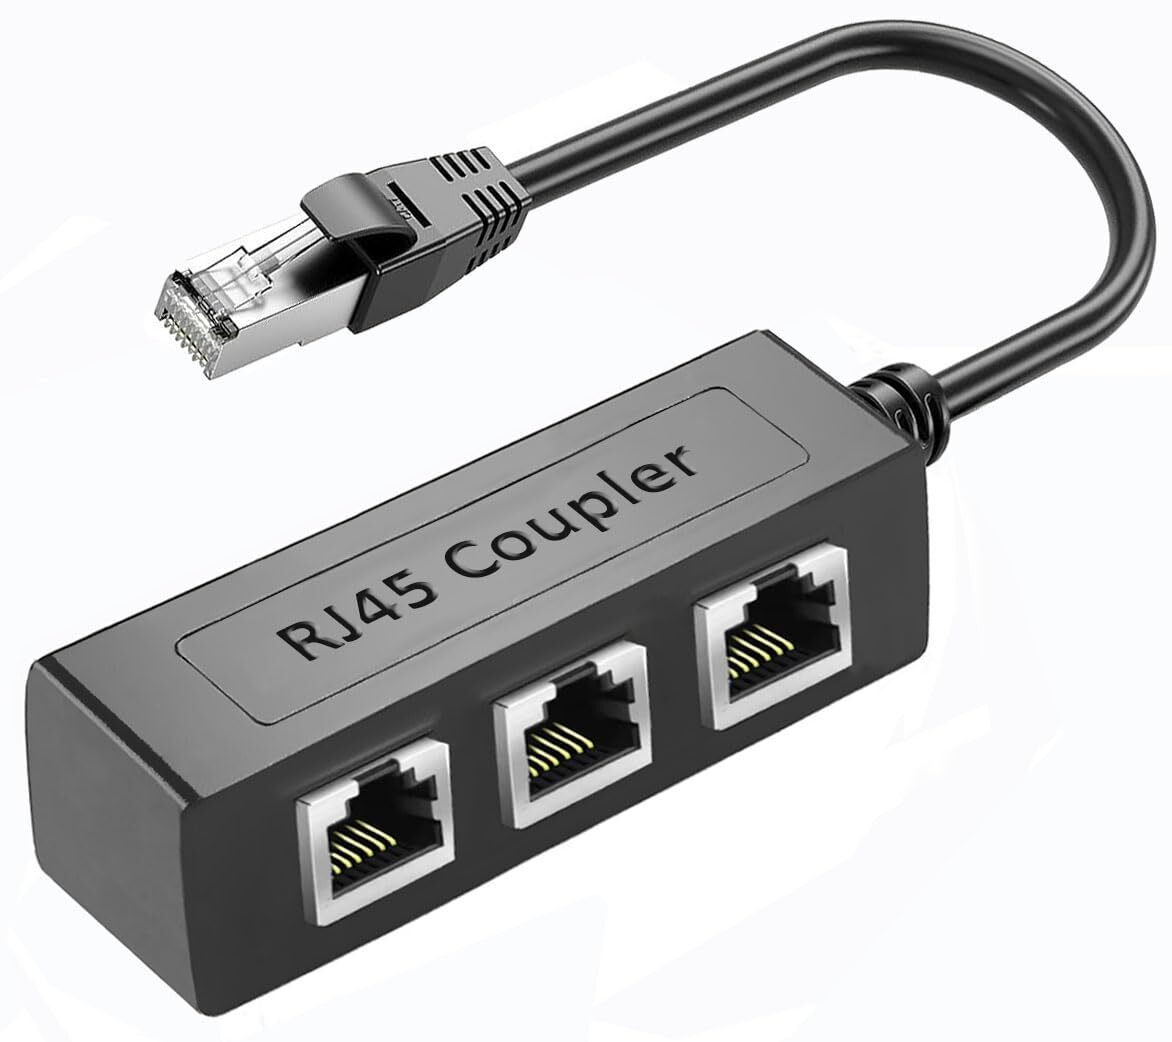 RJ45 Ethernet Splitter 1 to 3 Network Adapter RJ45 1 Male to 3 Female LAN Eth...